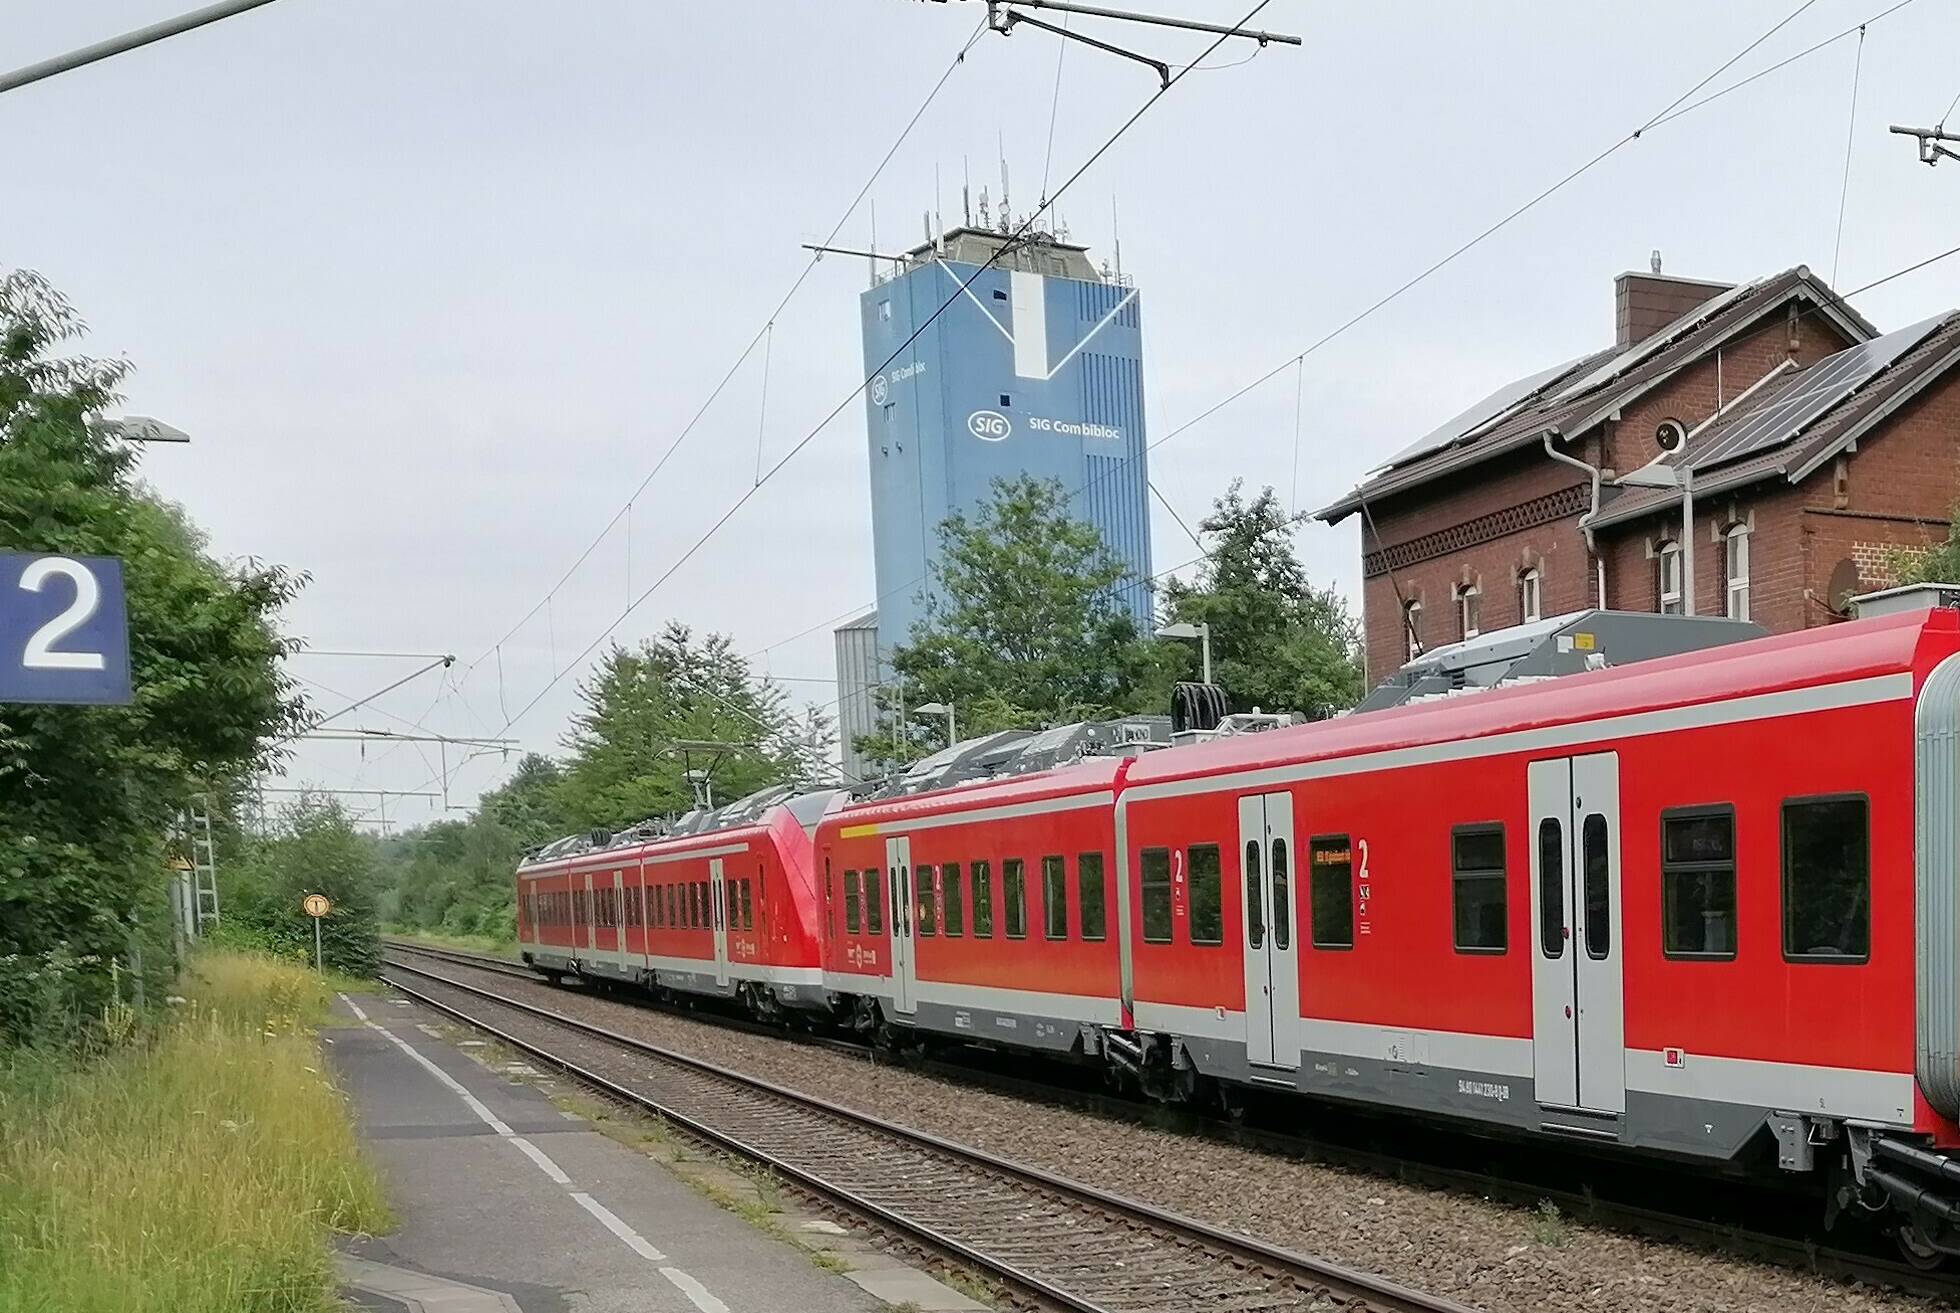  Am Montag standen die Fahrgäste am Bahnhof und wunderten sich, dass die Bahn nicht kam. Über den Ausfall bis zum 17. September wurden sie nicht ausreichend informiert.  